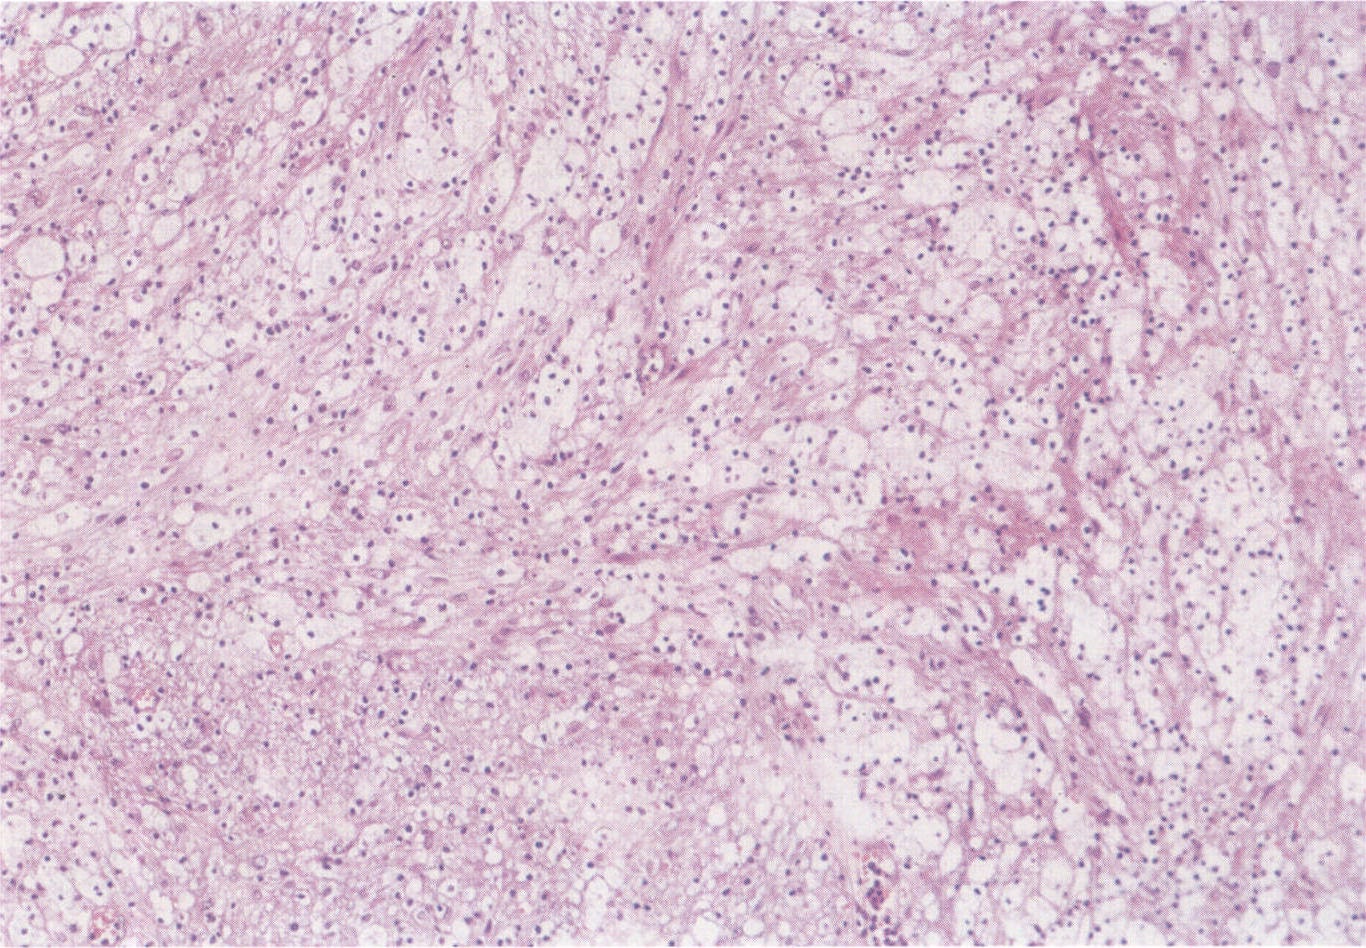 图4-1-15 神经鞘瘤，肿瘤结构疏松，部分肿瘤细胞多角形，胞浆丰富，空泡状，可见微囊形成和粘液变性，即AntoniB型结构。HE染色，低倍